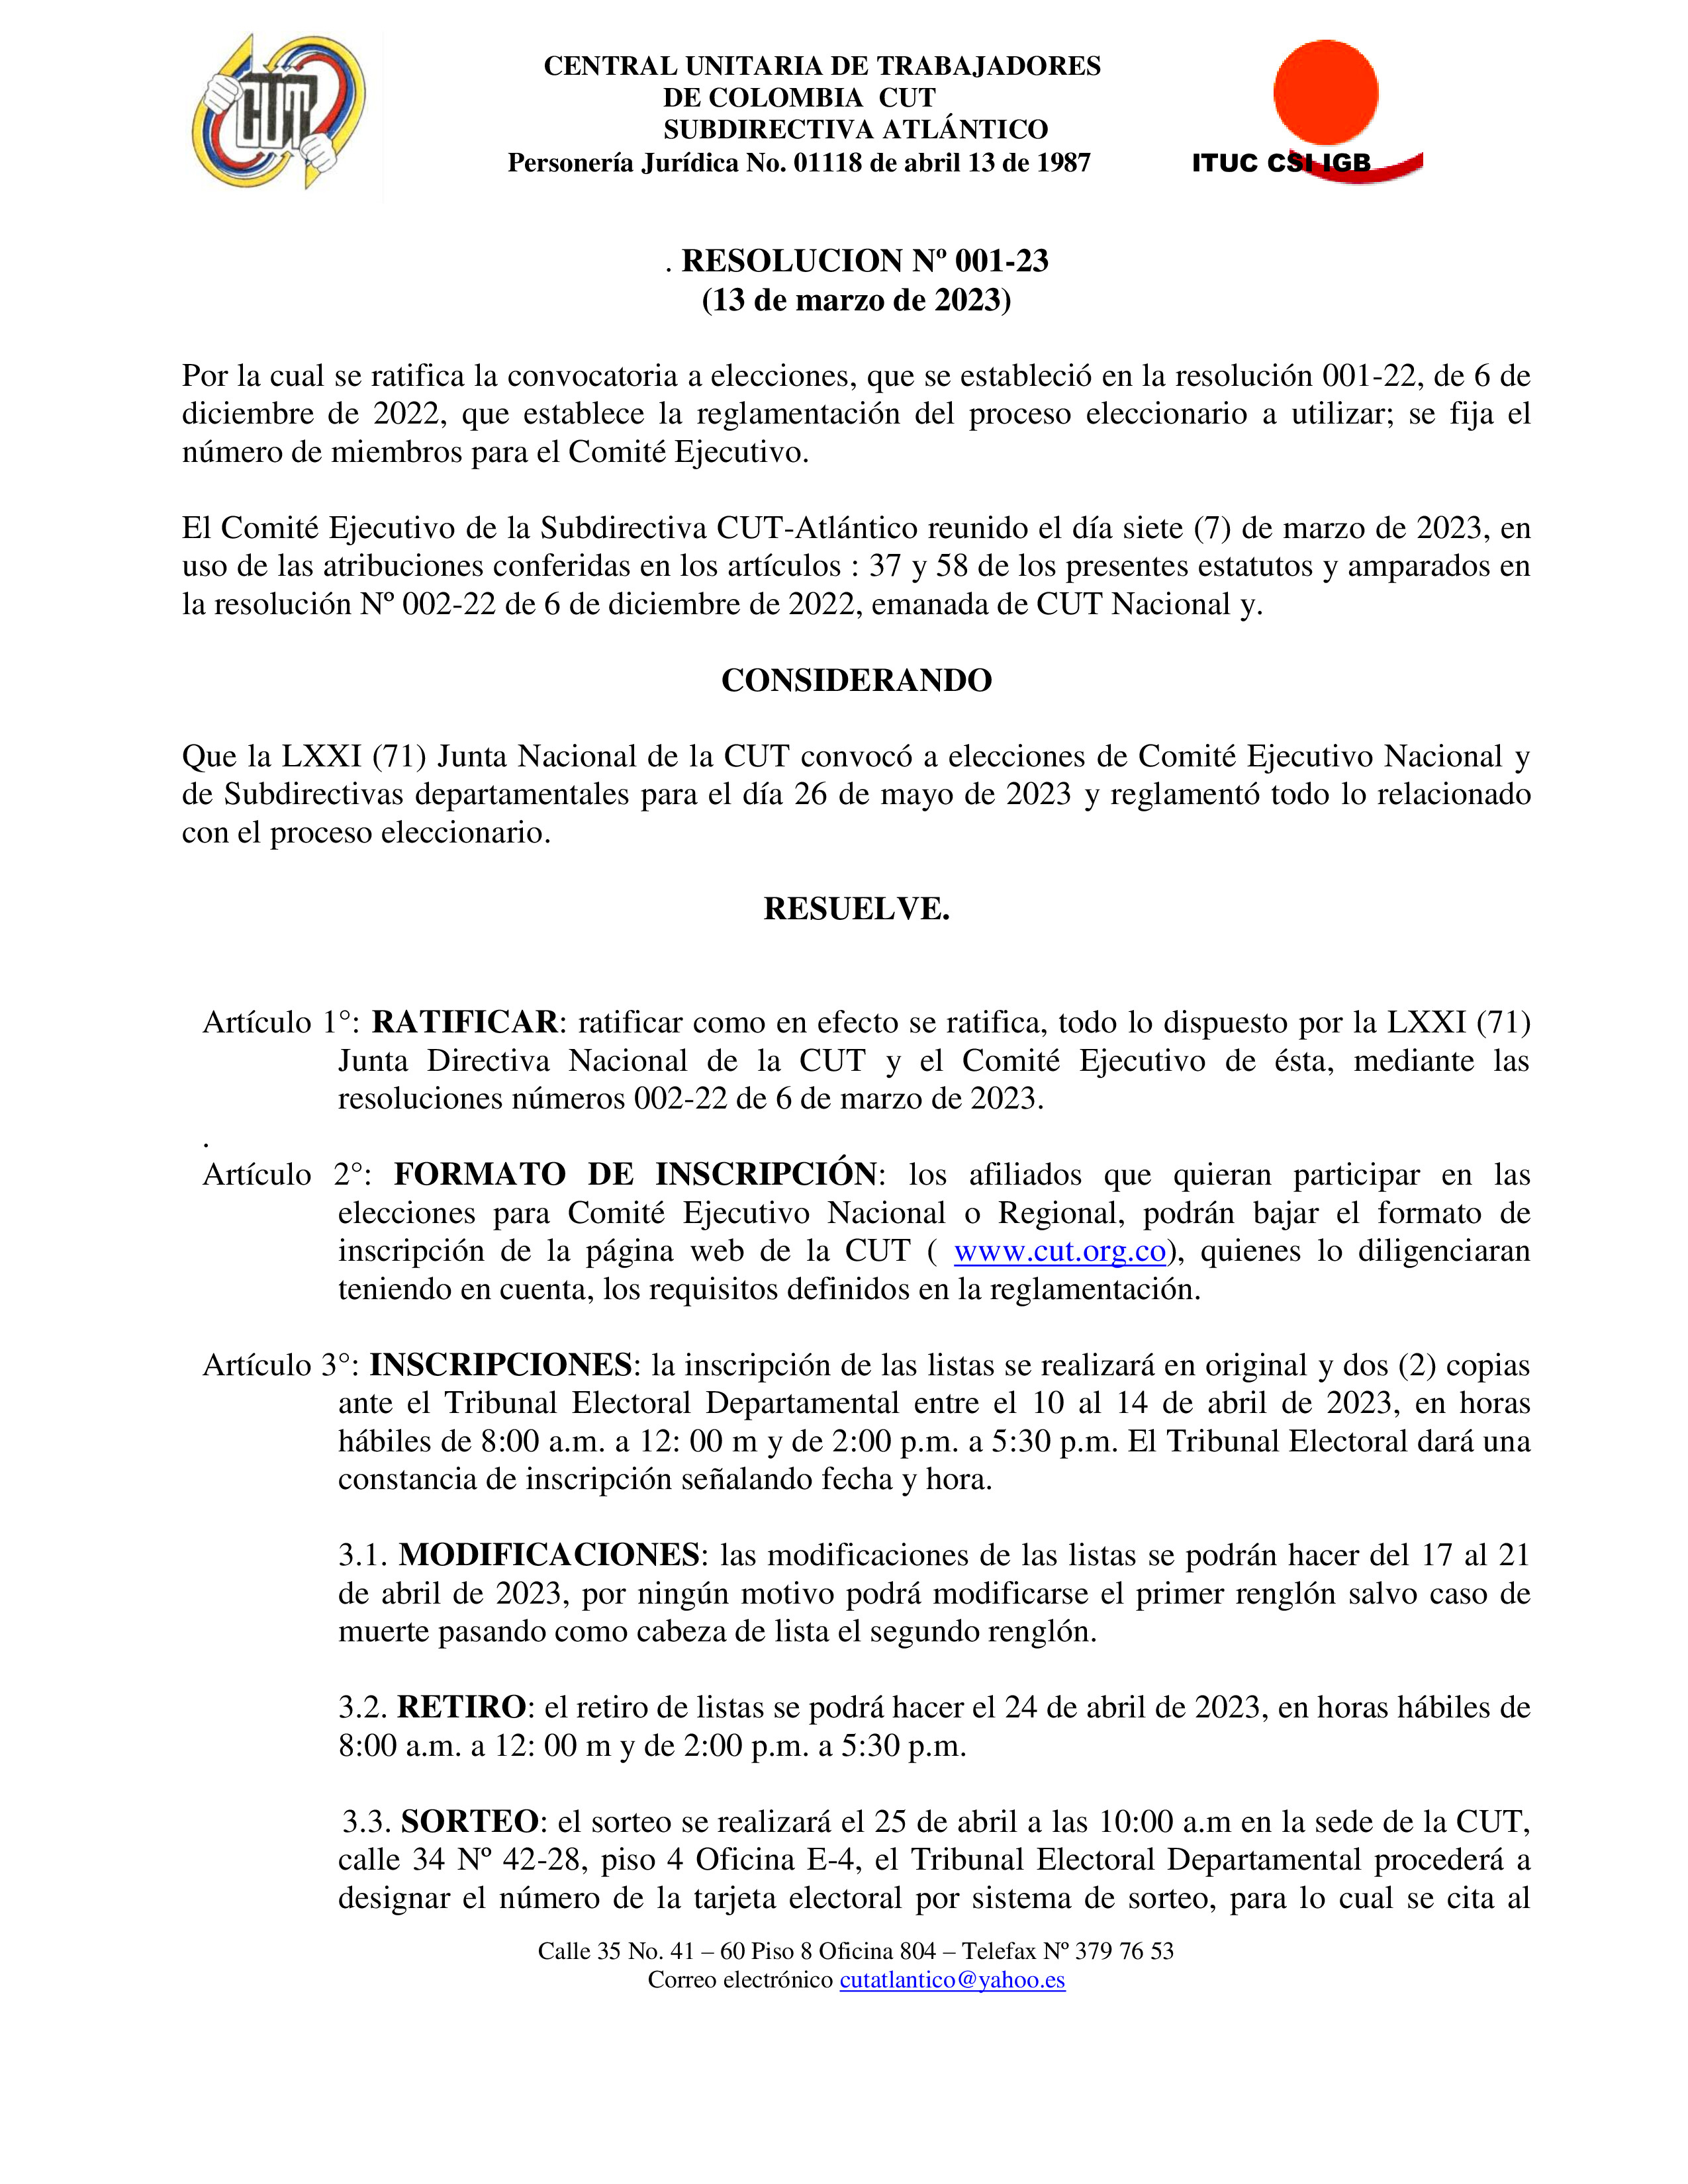 RESOLUCION ELECIONES CUT-ATALNTICO RATIFICA CONVOCATORIA DE ELECCIONES 2023